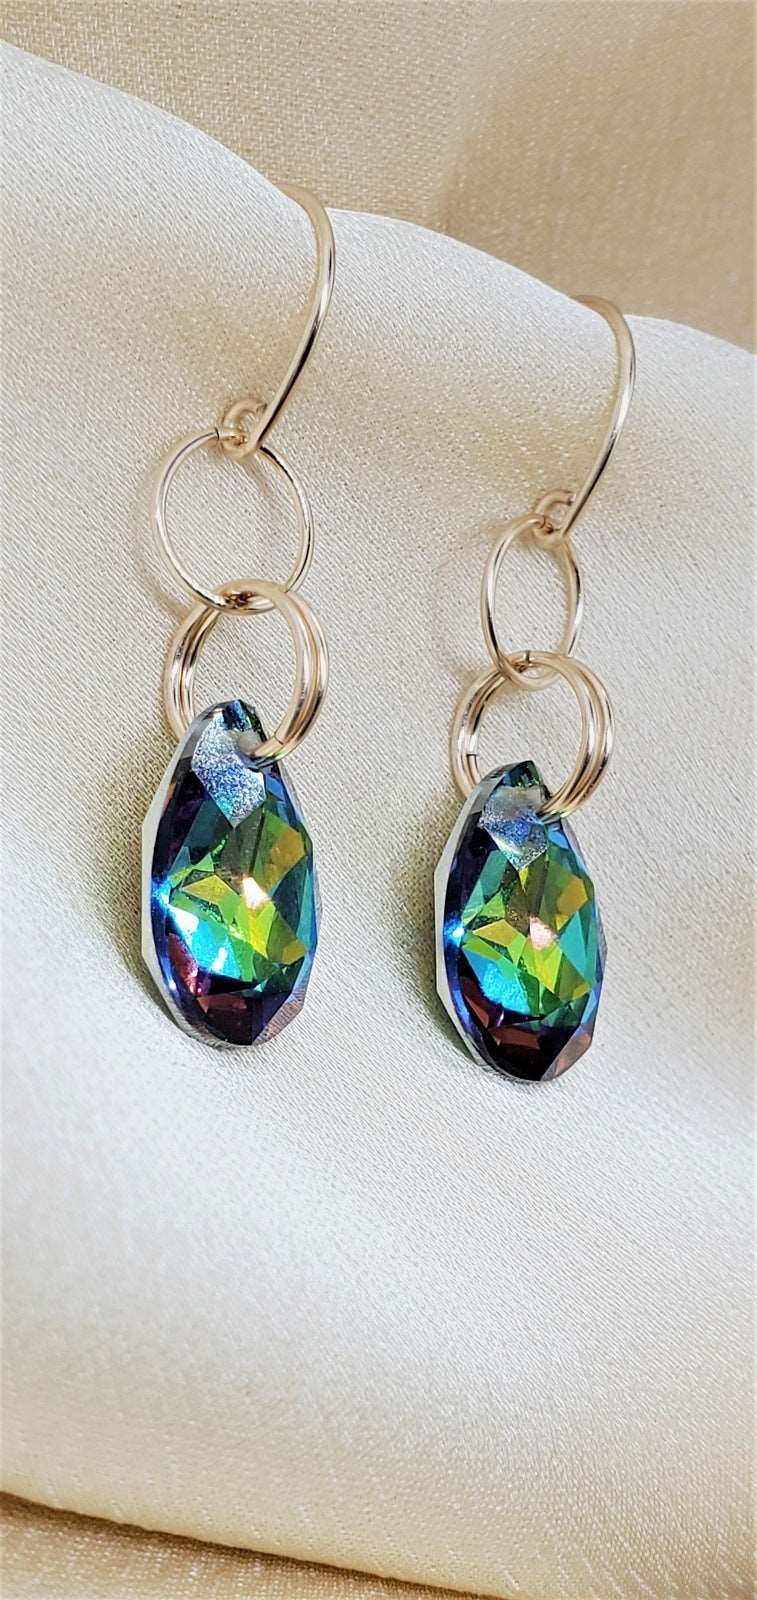 photo of earrings, earrings with Swarovski crystals, Splash Spice Dangle Earrings, unique earrings, earrings for women